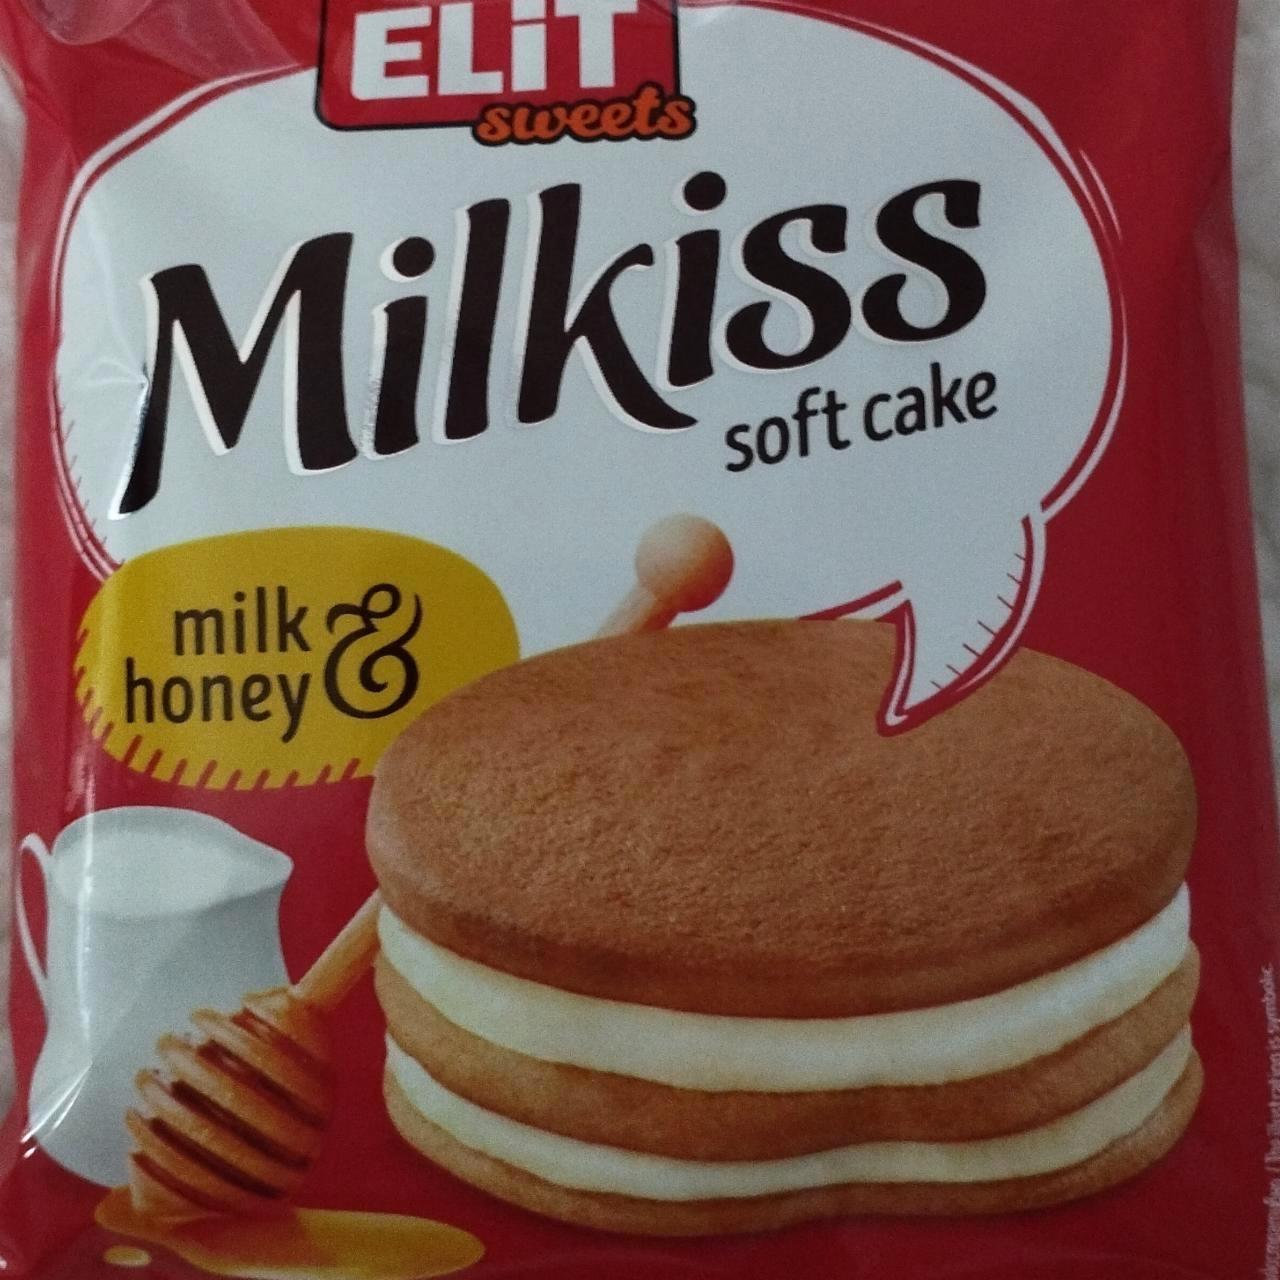 Képek - Milkiss soft cake Elit sweets